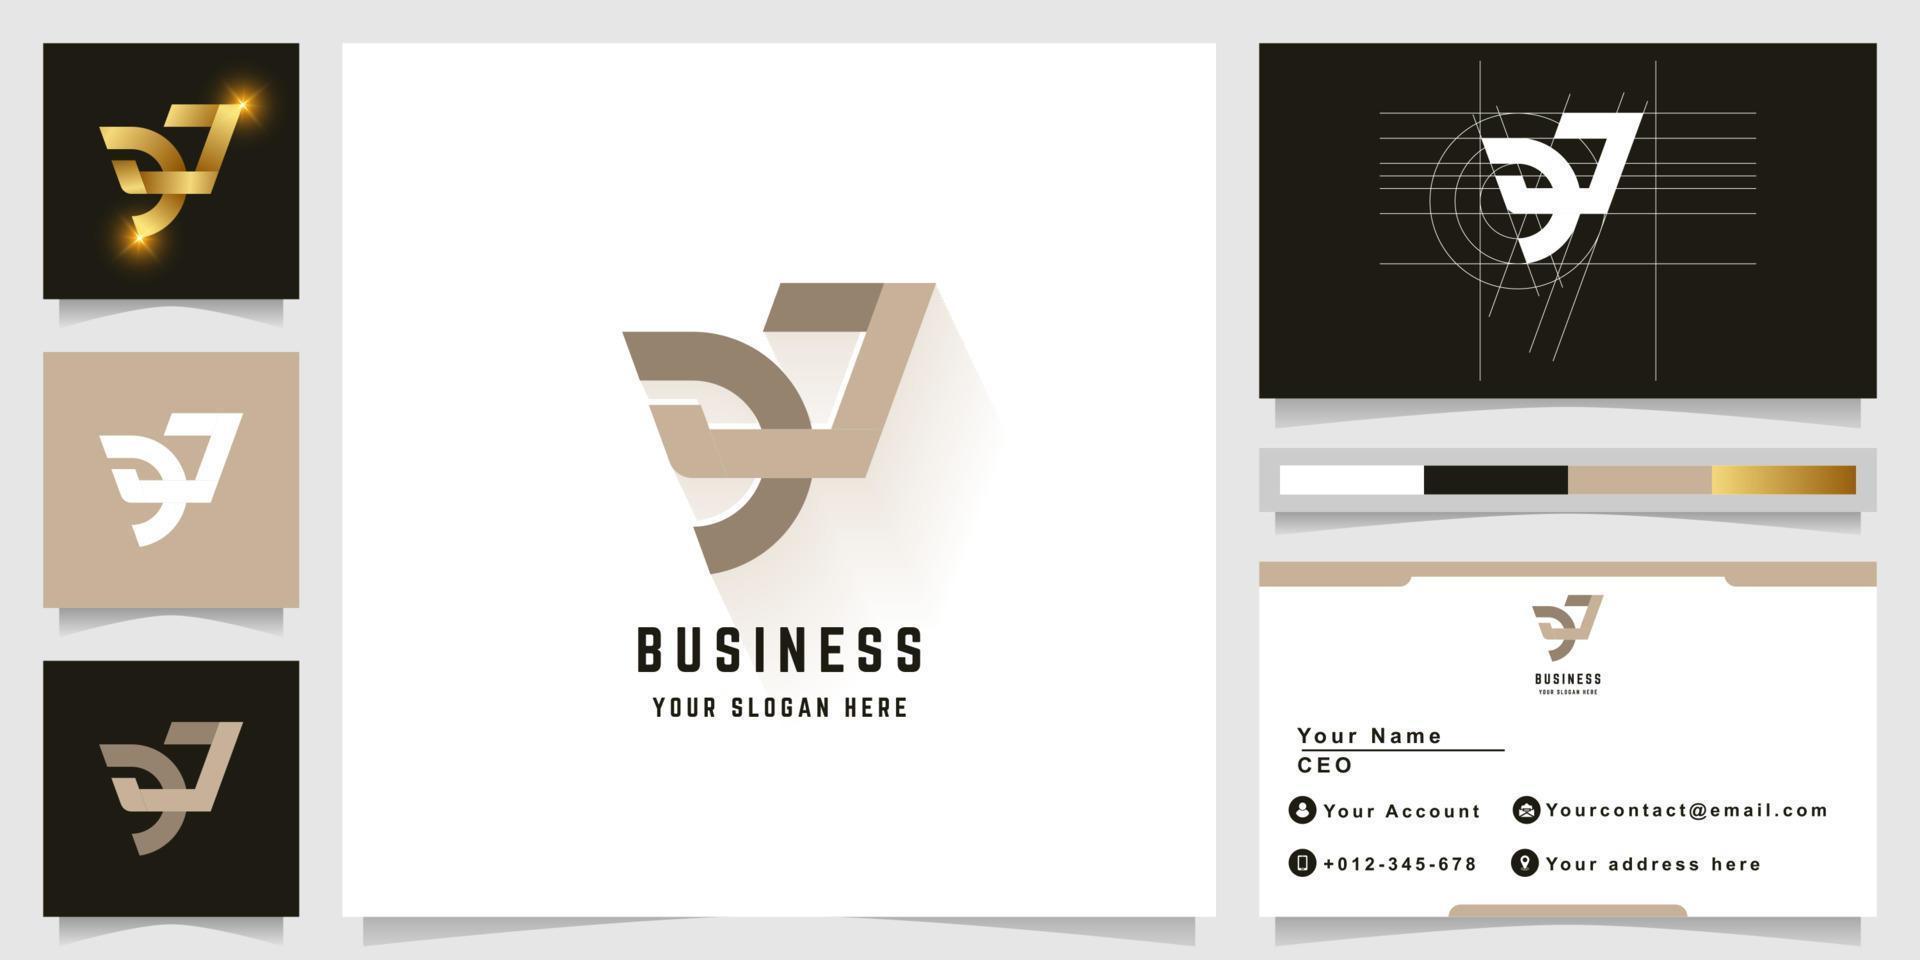 Letter DJ or eJ monogram logo with business card design vector